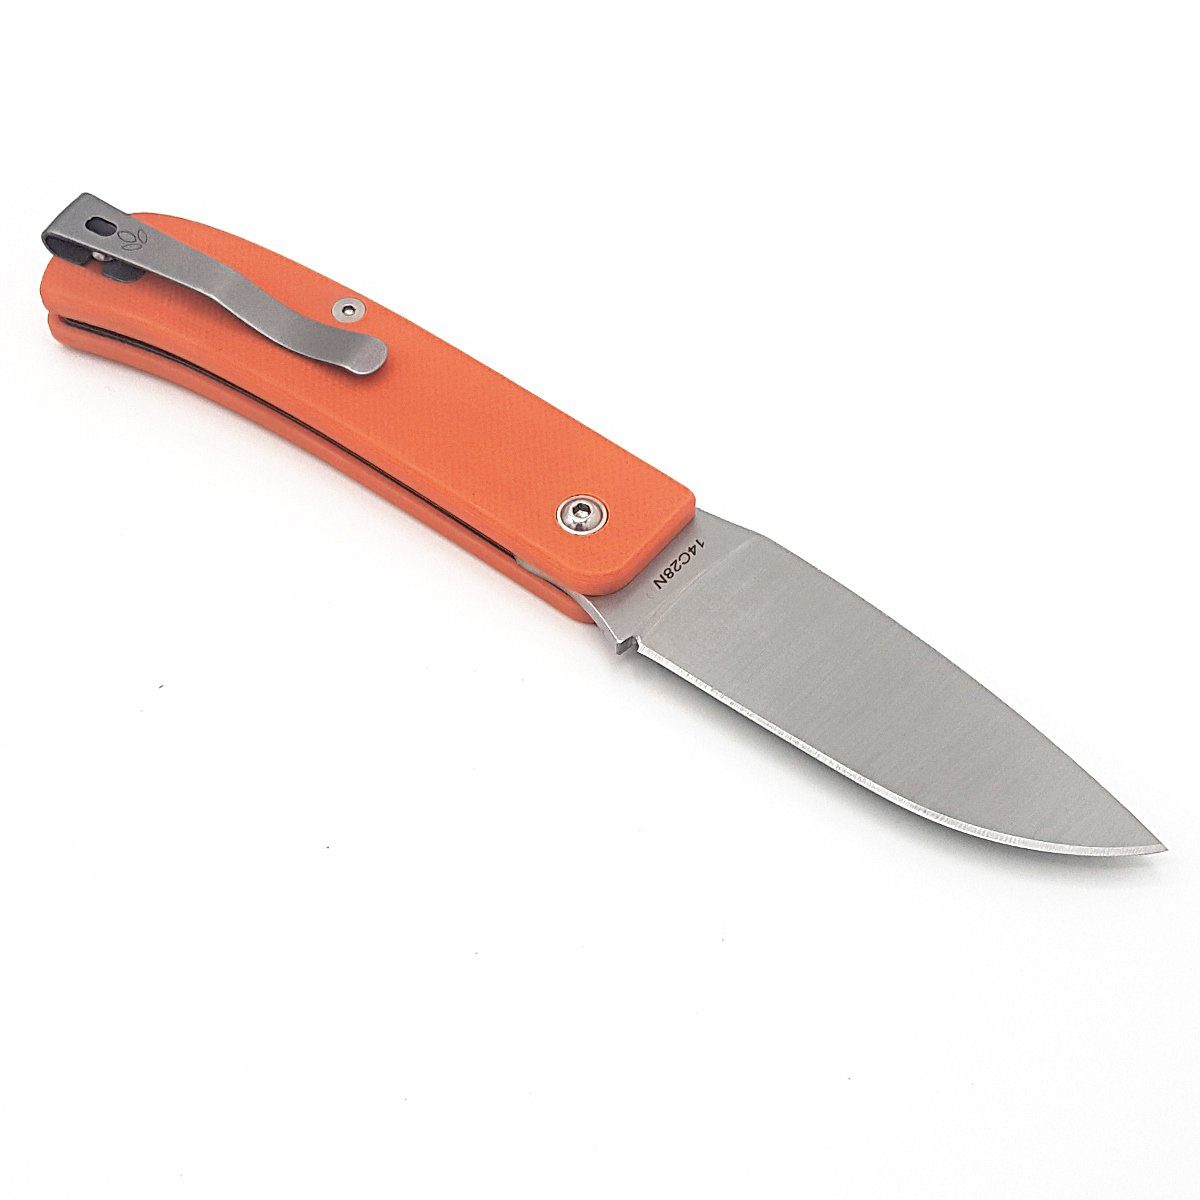 Wasp umsetzbaren Orange Taschenmesser Deep-Carry-Clip Klappmesser, 14C28N Slipjoint mit Manly